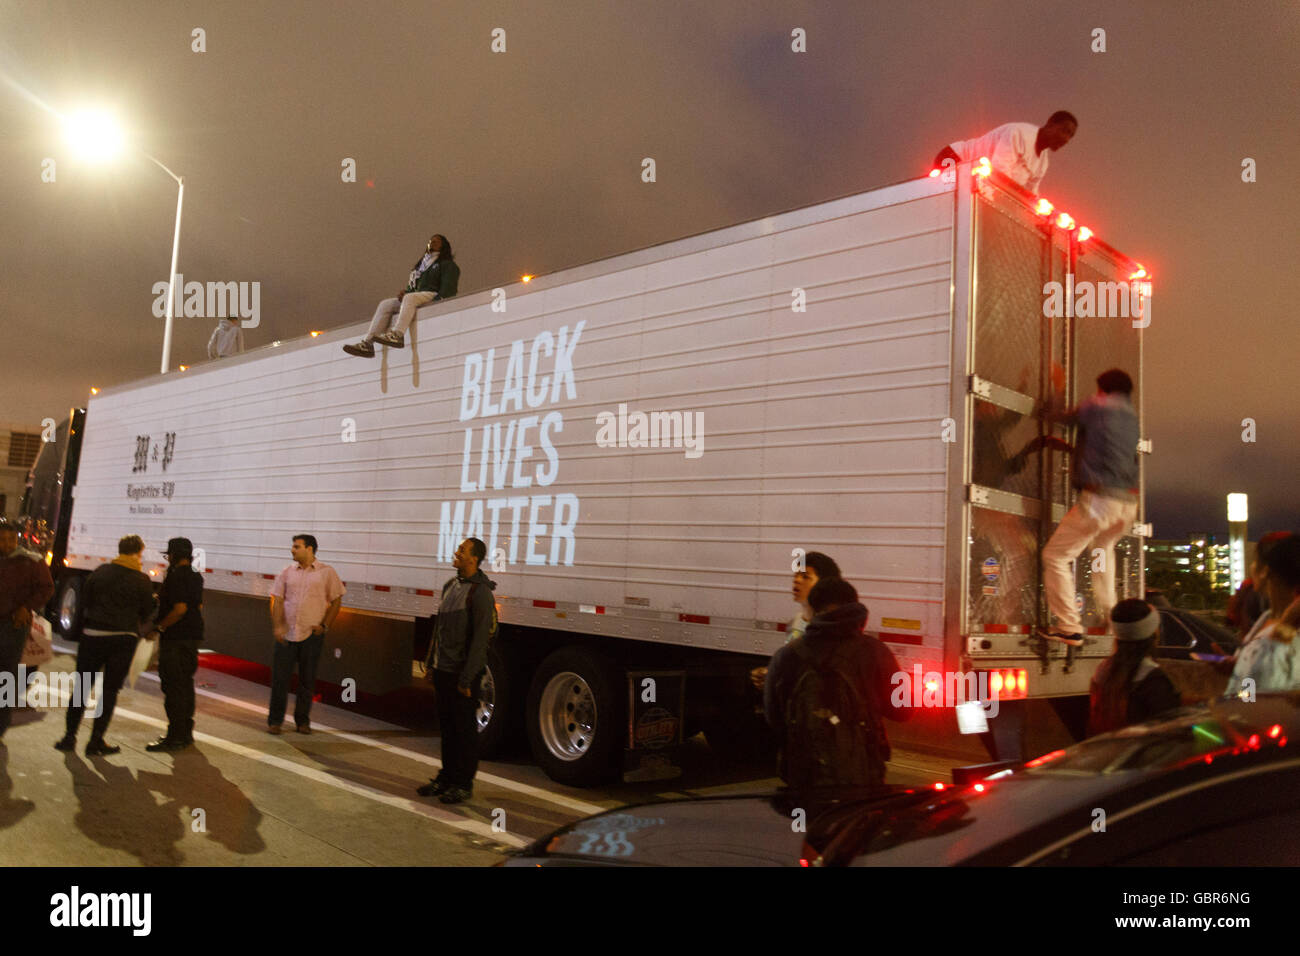 Oakland, Californie, USA. 7 juillet, 2016. Les protestataires ont grimpé en haut d'un gros camion et projetés 'Black vit" sur le côté. Crédit : John Orvis/Alamy Live News Banque D'Images